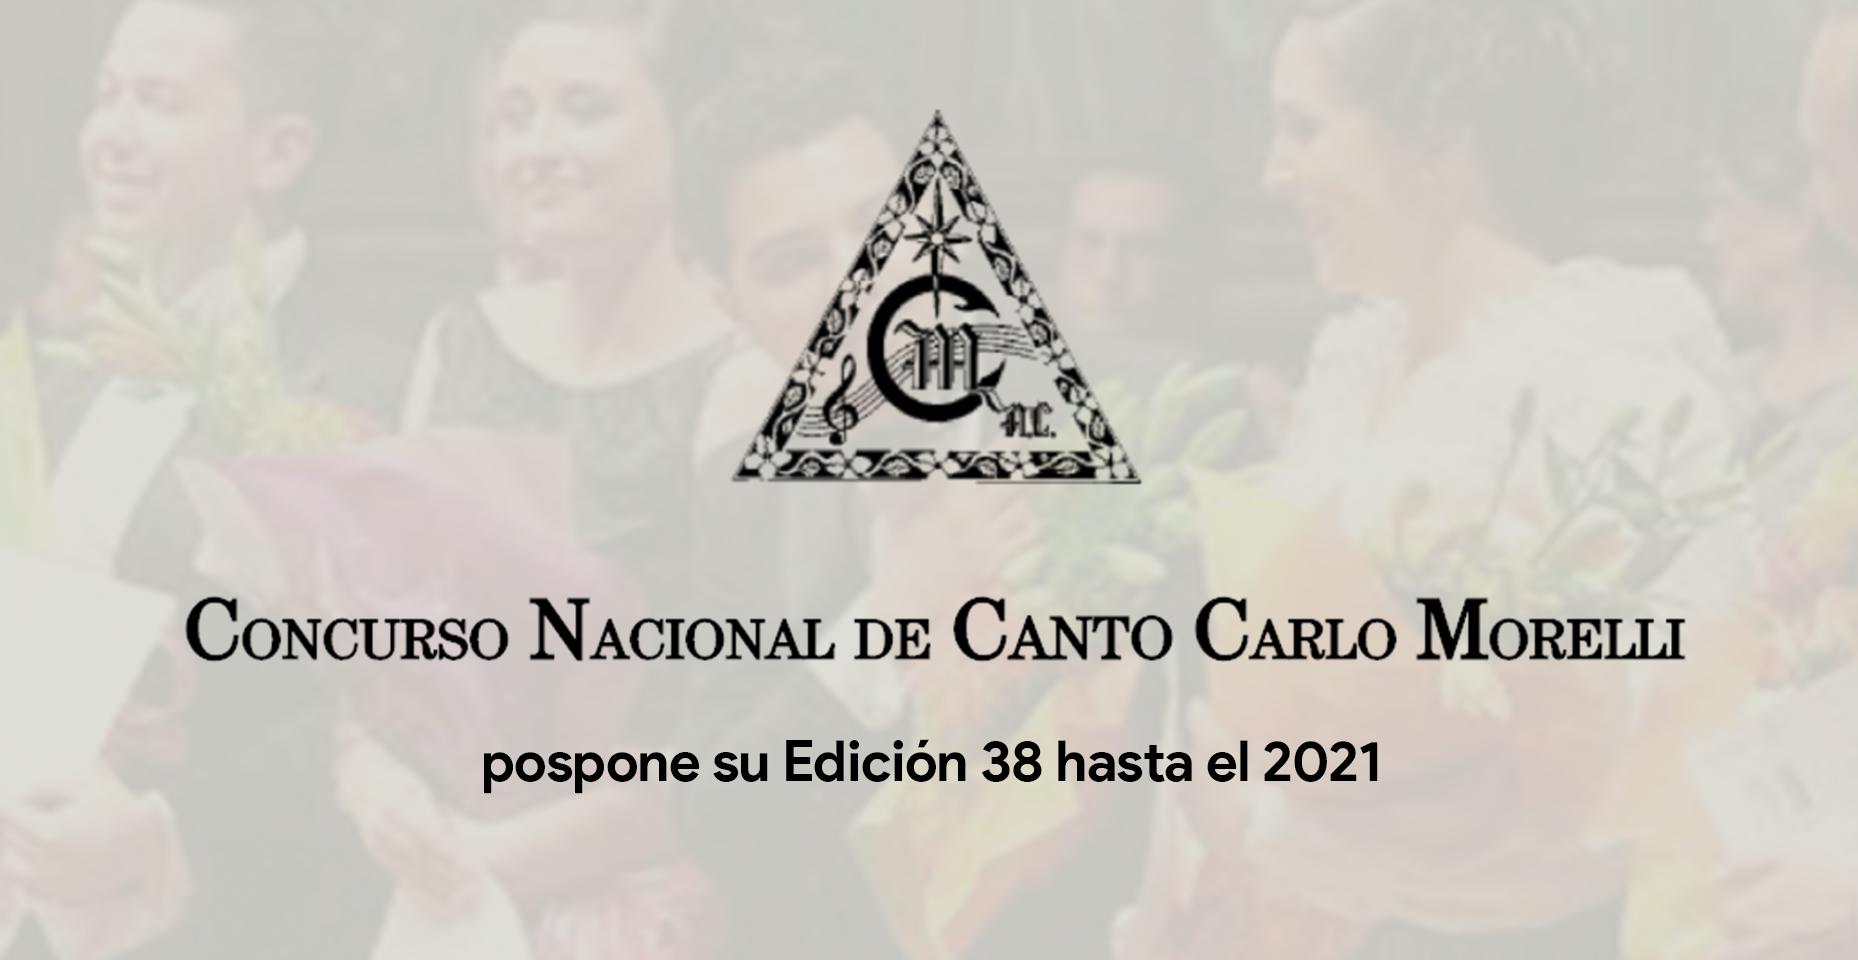 Concurso Nacional de Canto Carlo Morelli